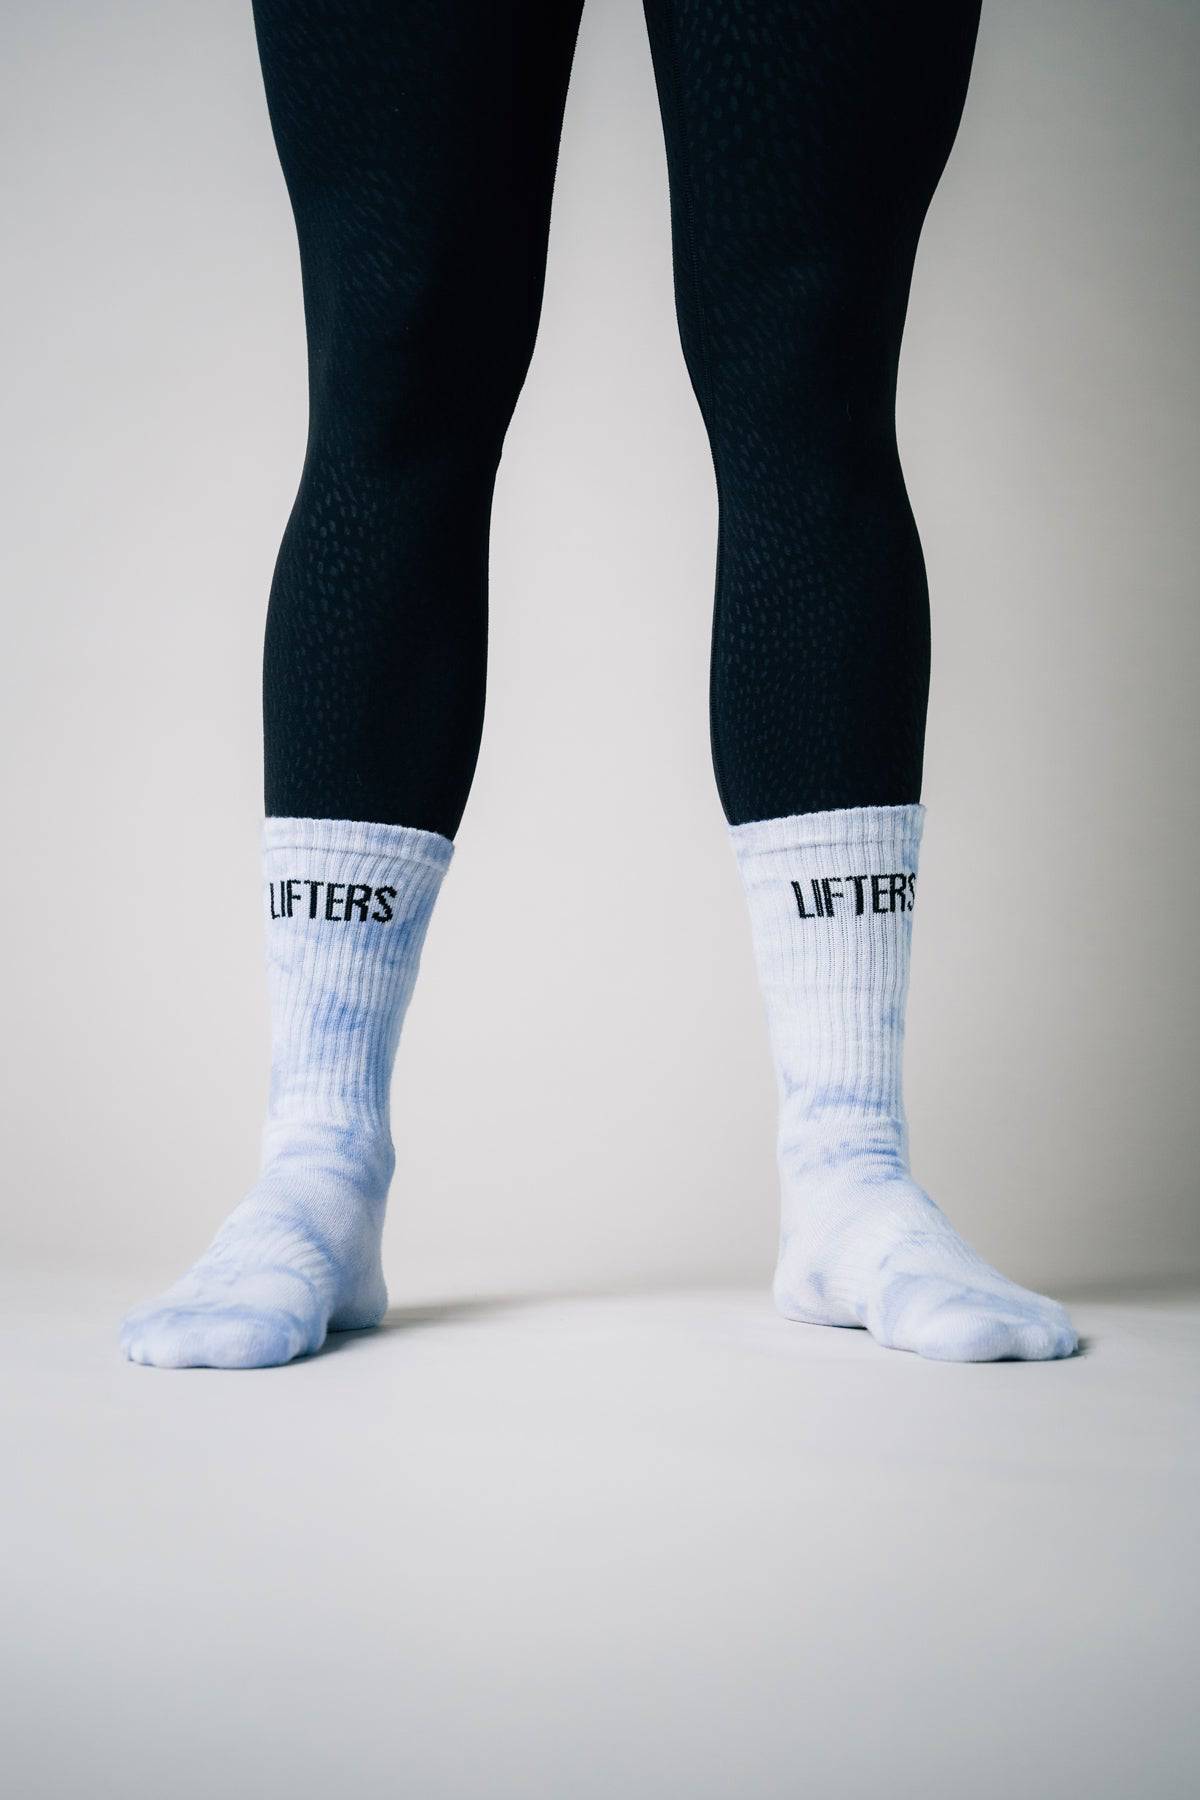 Lifters Tie-Dye Socken Socken Lifters Wear Sky Blue S 36-38 